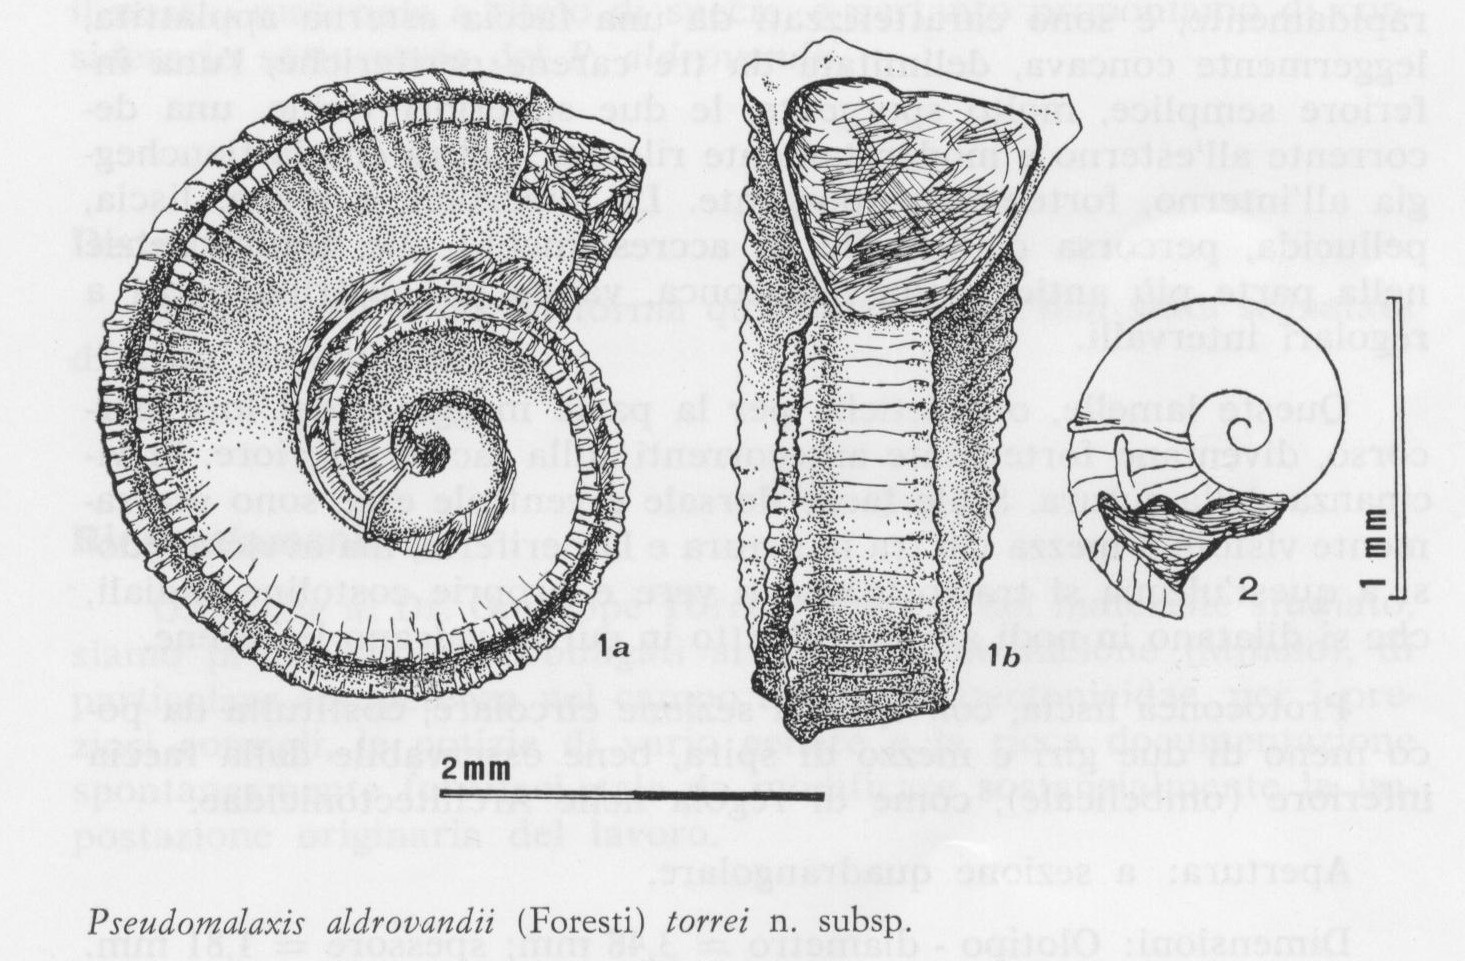 Specie fossilifere nuove alla cui scoperta G. Torre contribuì in maniera determinante